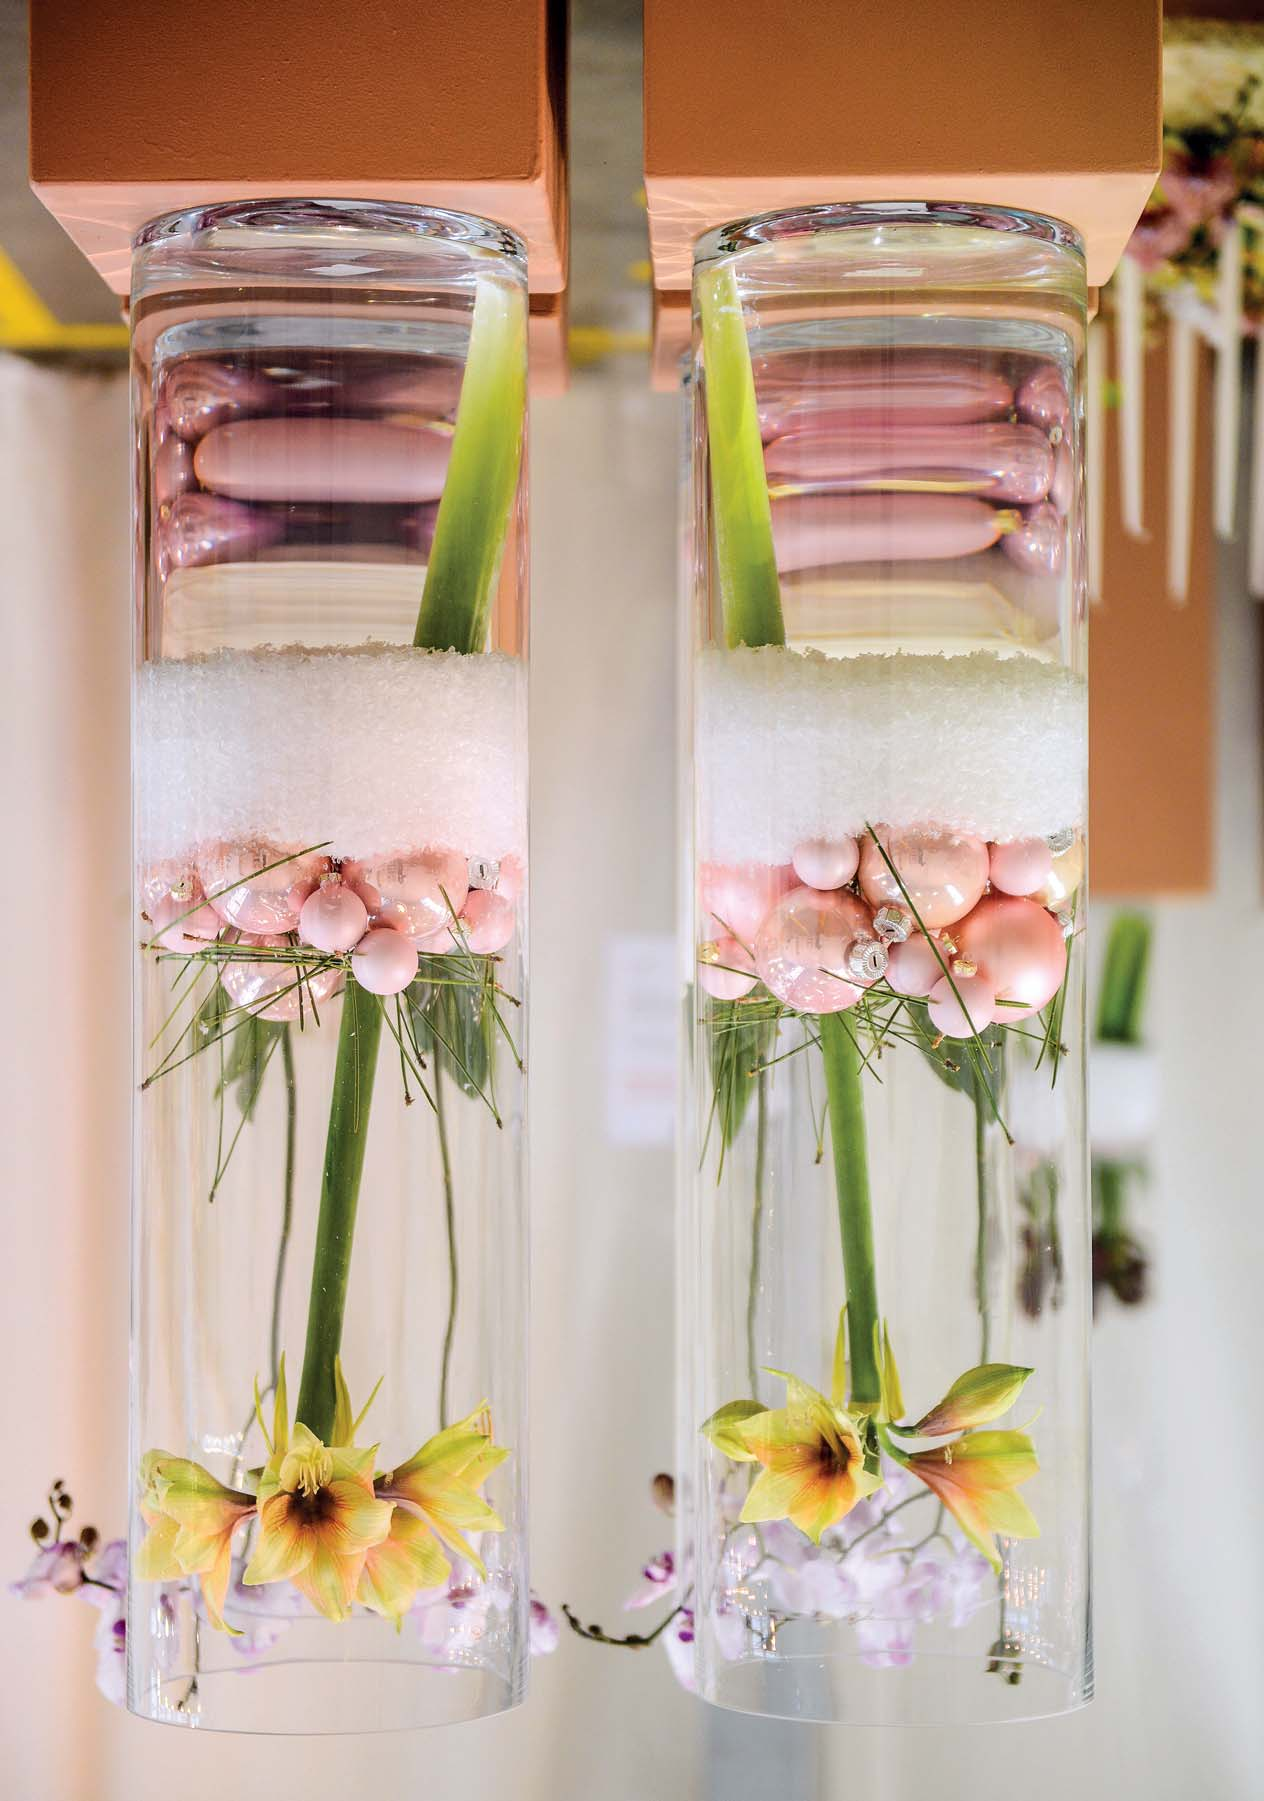 Die rosa - farbenen Kugeln am Boden des Gefäßes nehmen die Zartheit der Orchideenblüten wieder auf Ausgabe 12/2015, Seite 30 www.gundv.